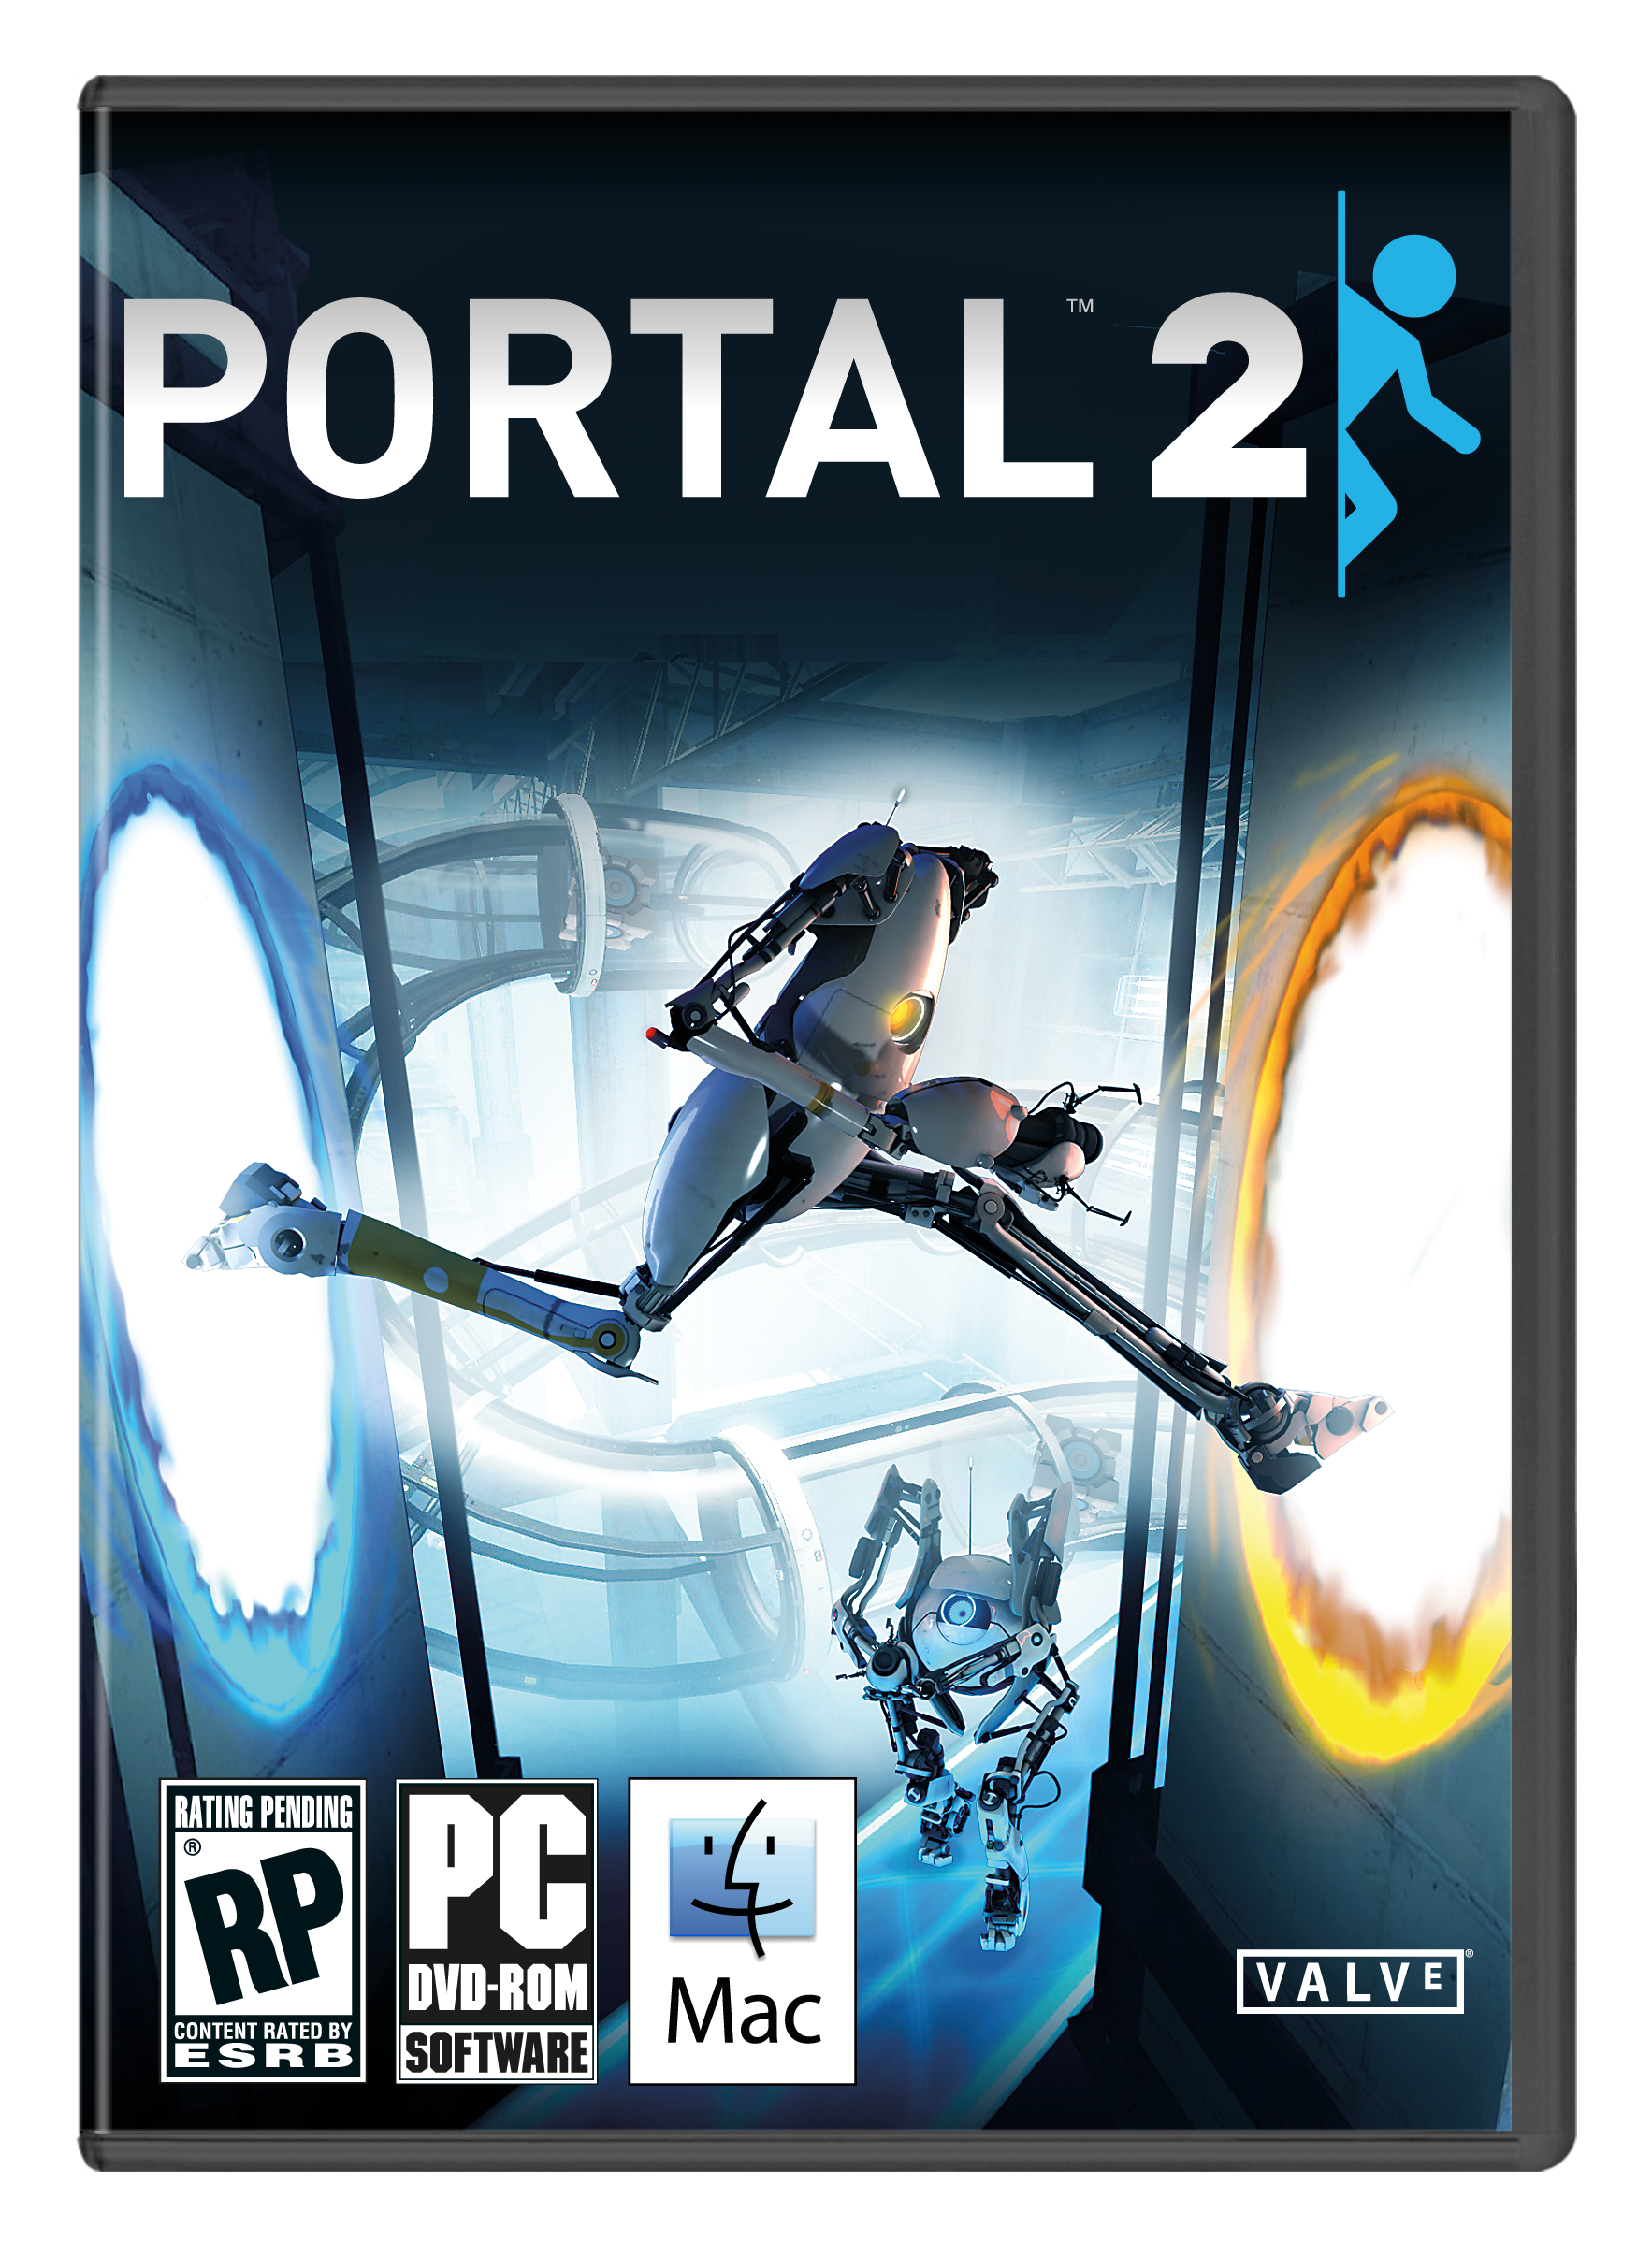 Portal 2 no dvd фото 18